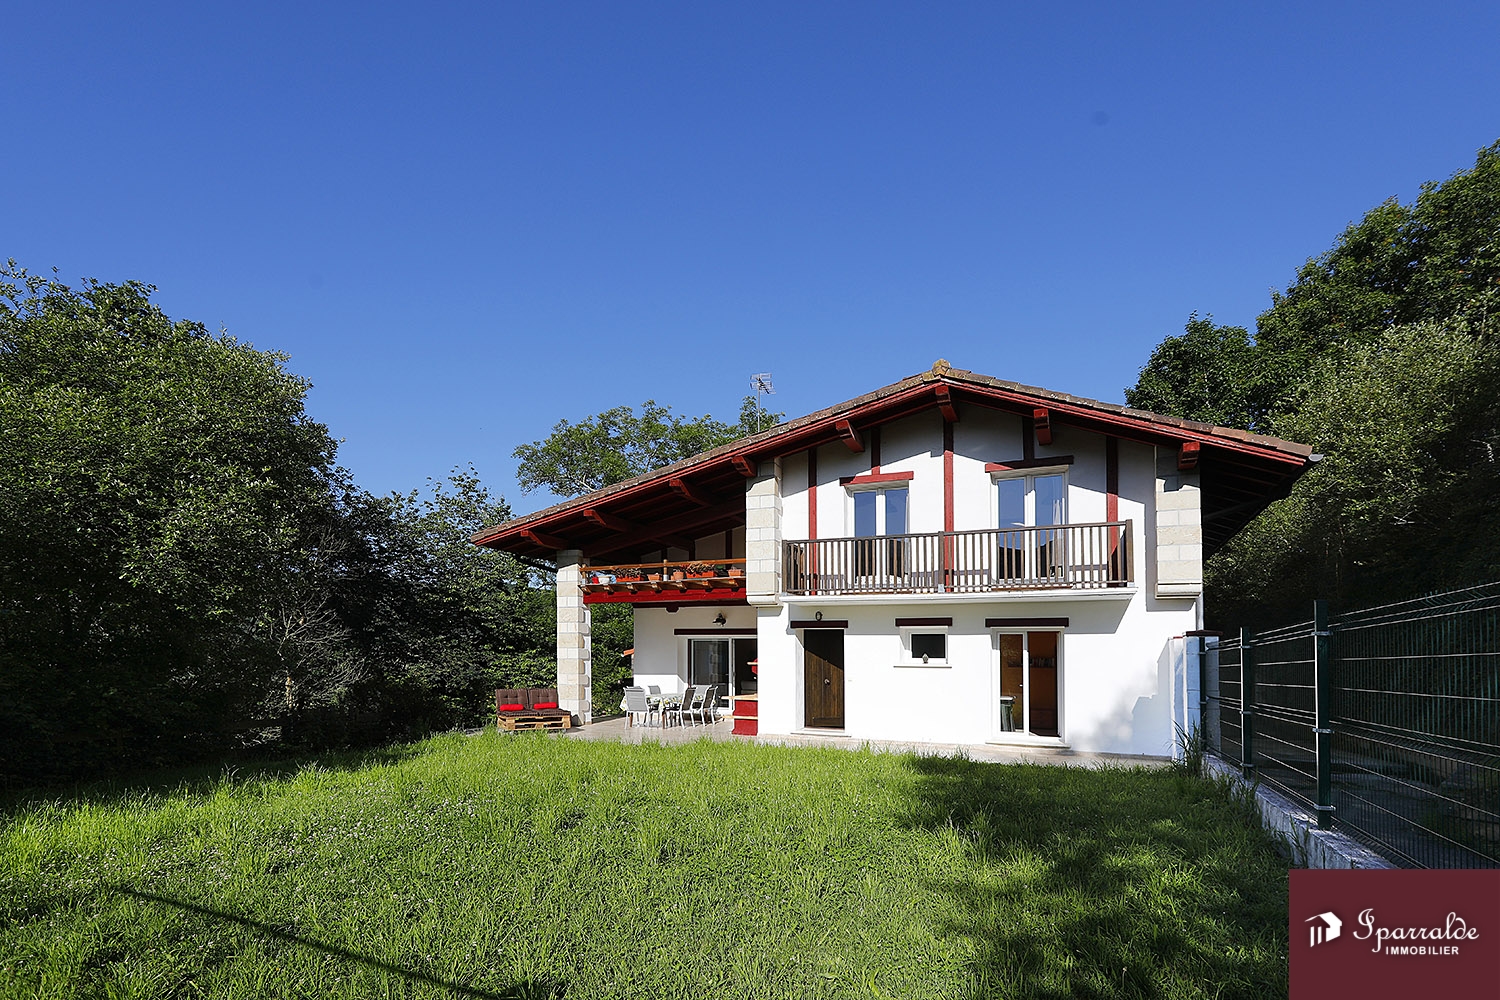 Magnifique Maison bifamiliale de style Basque à acheter, située à Biriatou, à 15 minutes des Plages (64)